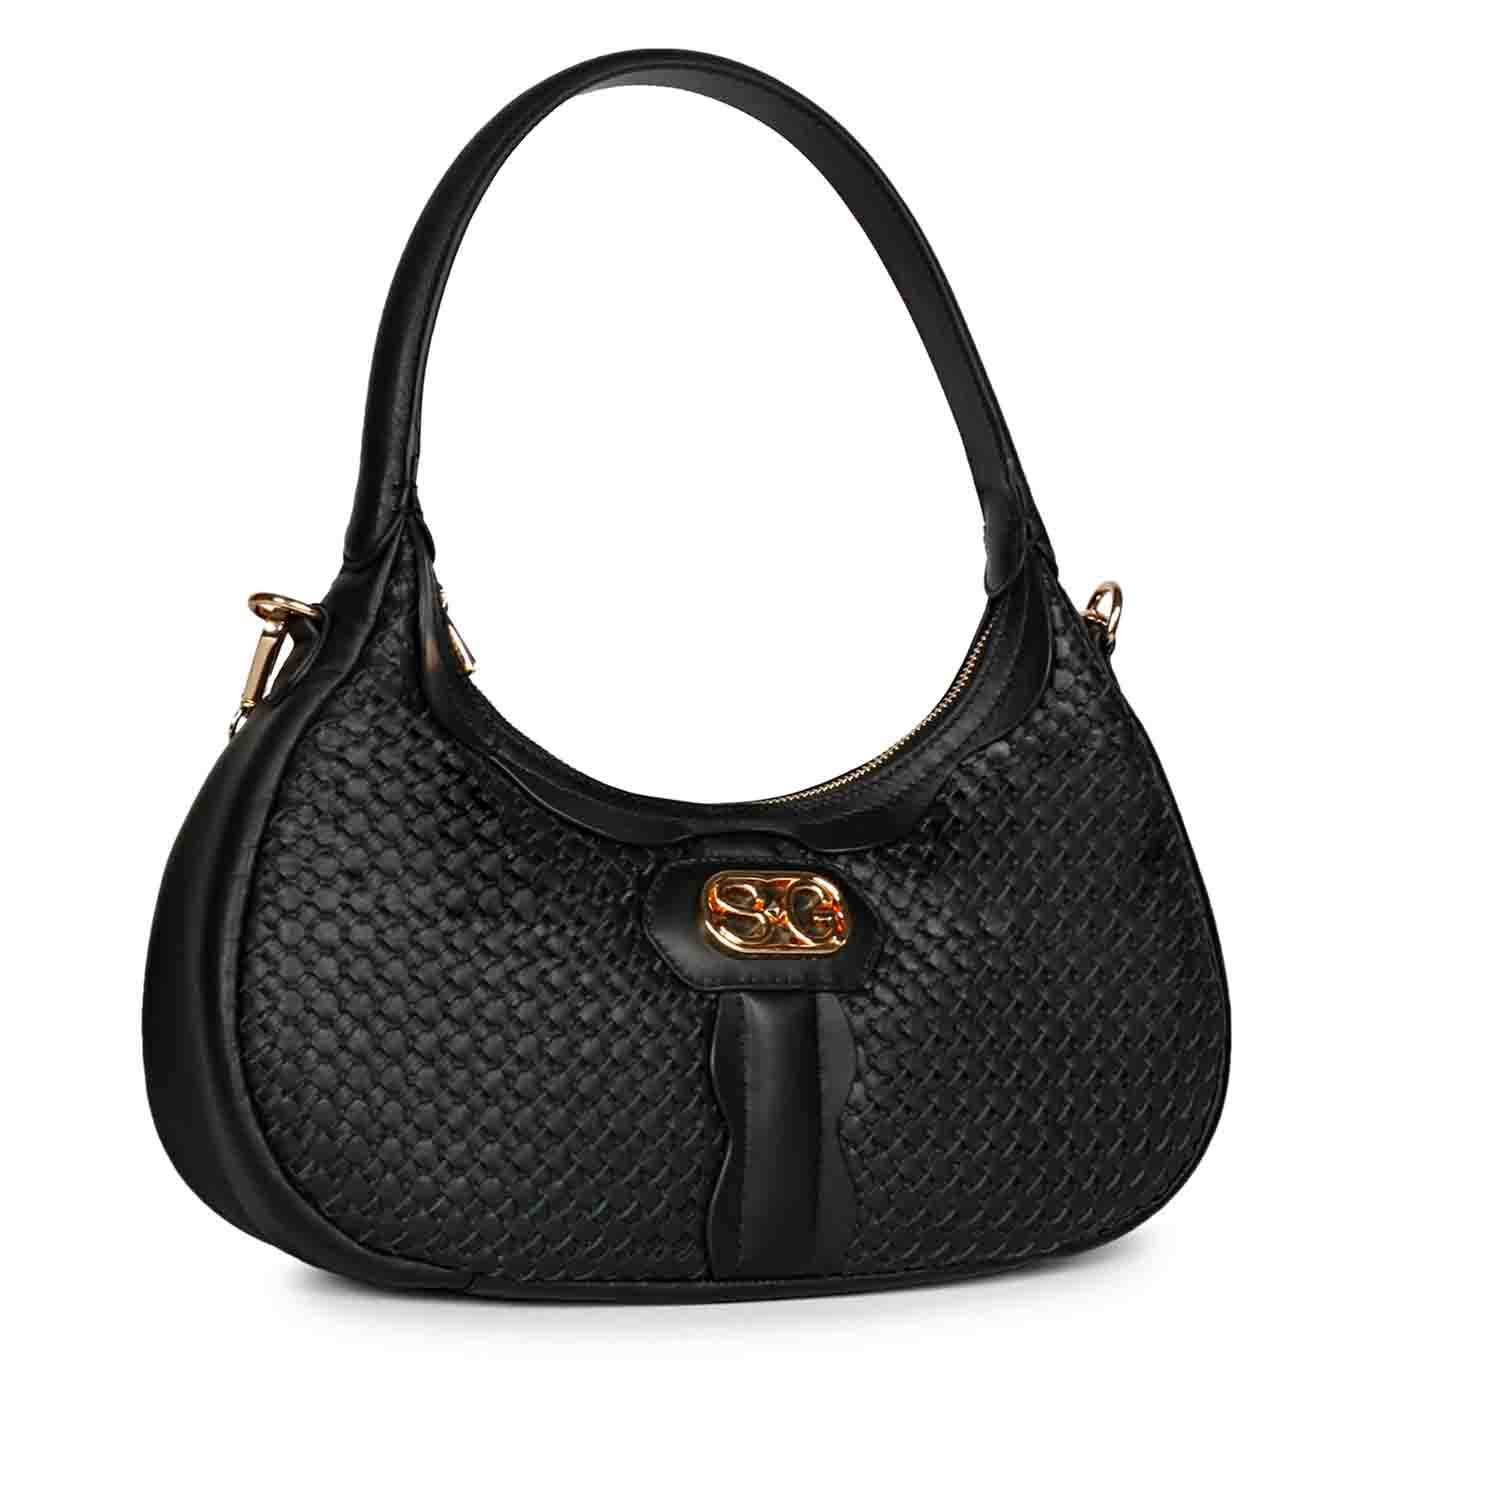 Calfnero Women's Genuine Leather Hand Bag (CON-2-Black) – www.calfnero.in